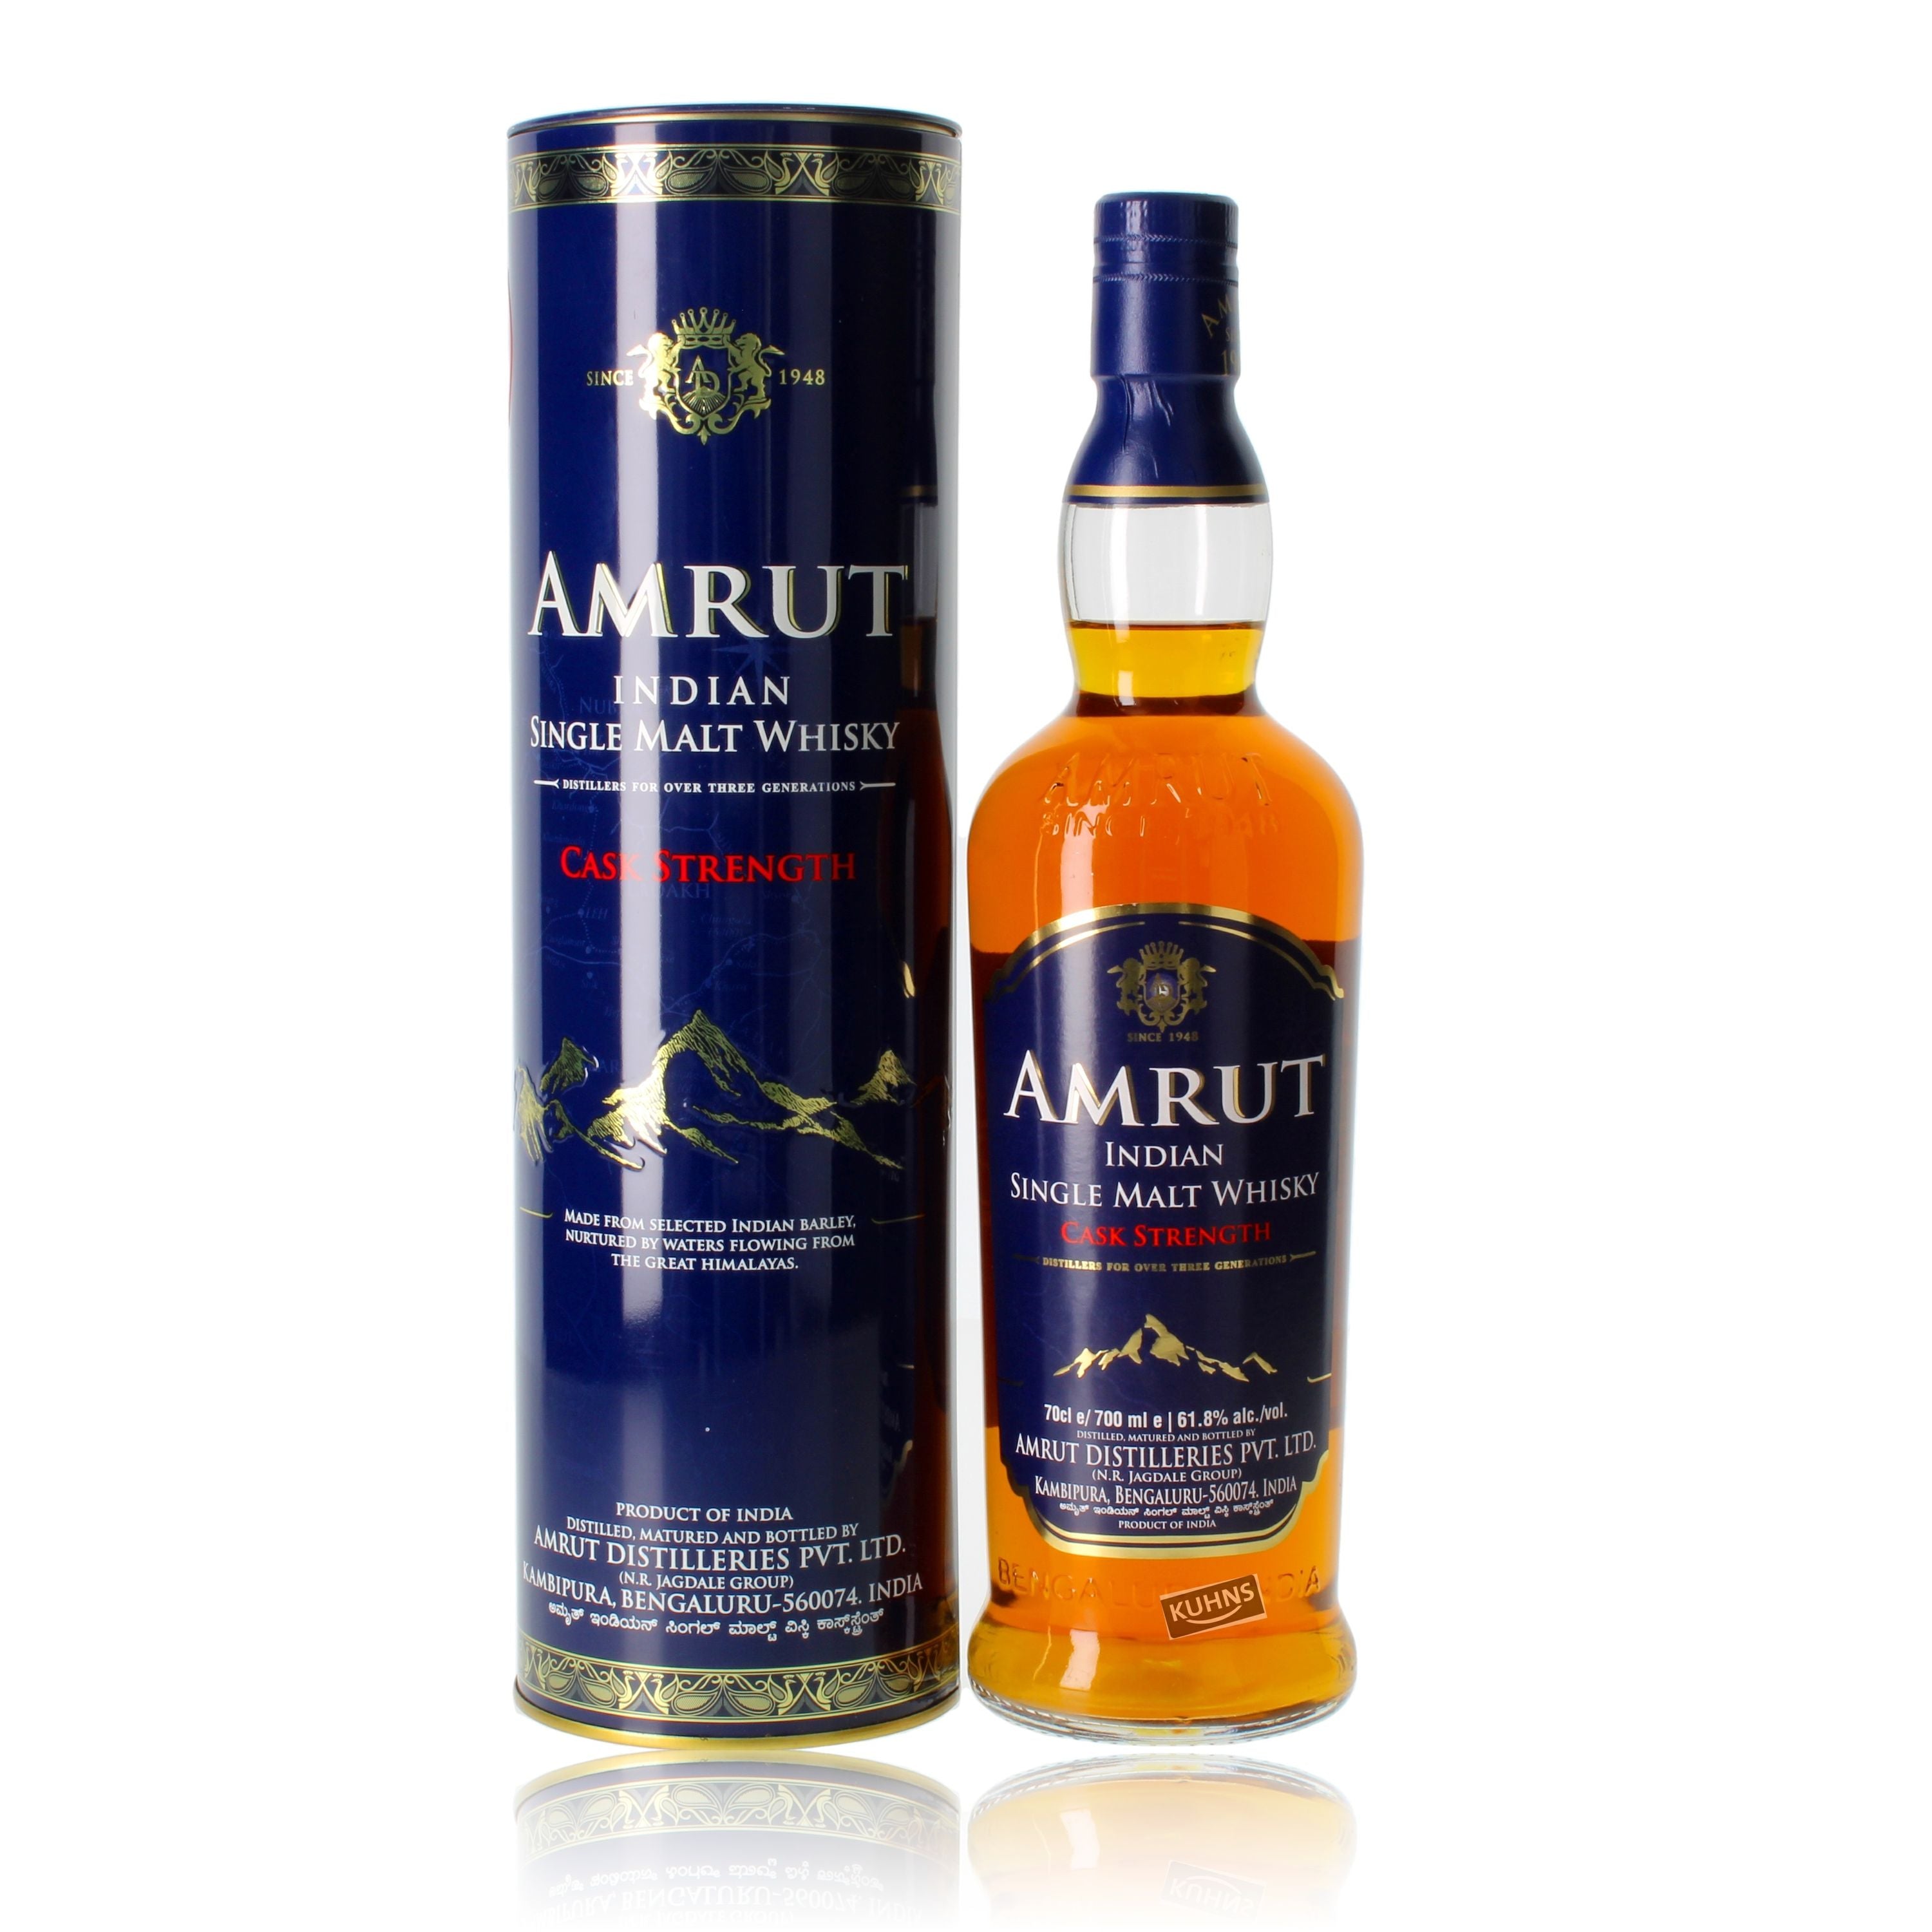 Amrut Cask Strength Indian Single Malt Whisky 0,7l, alk. 61,8 tilavuusprosenttia.